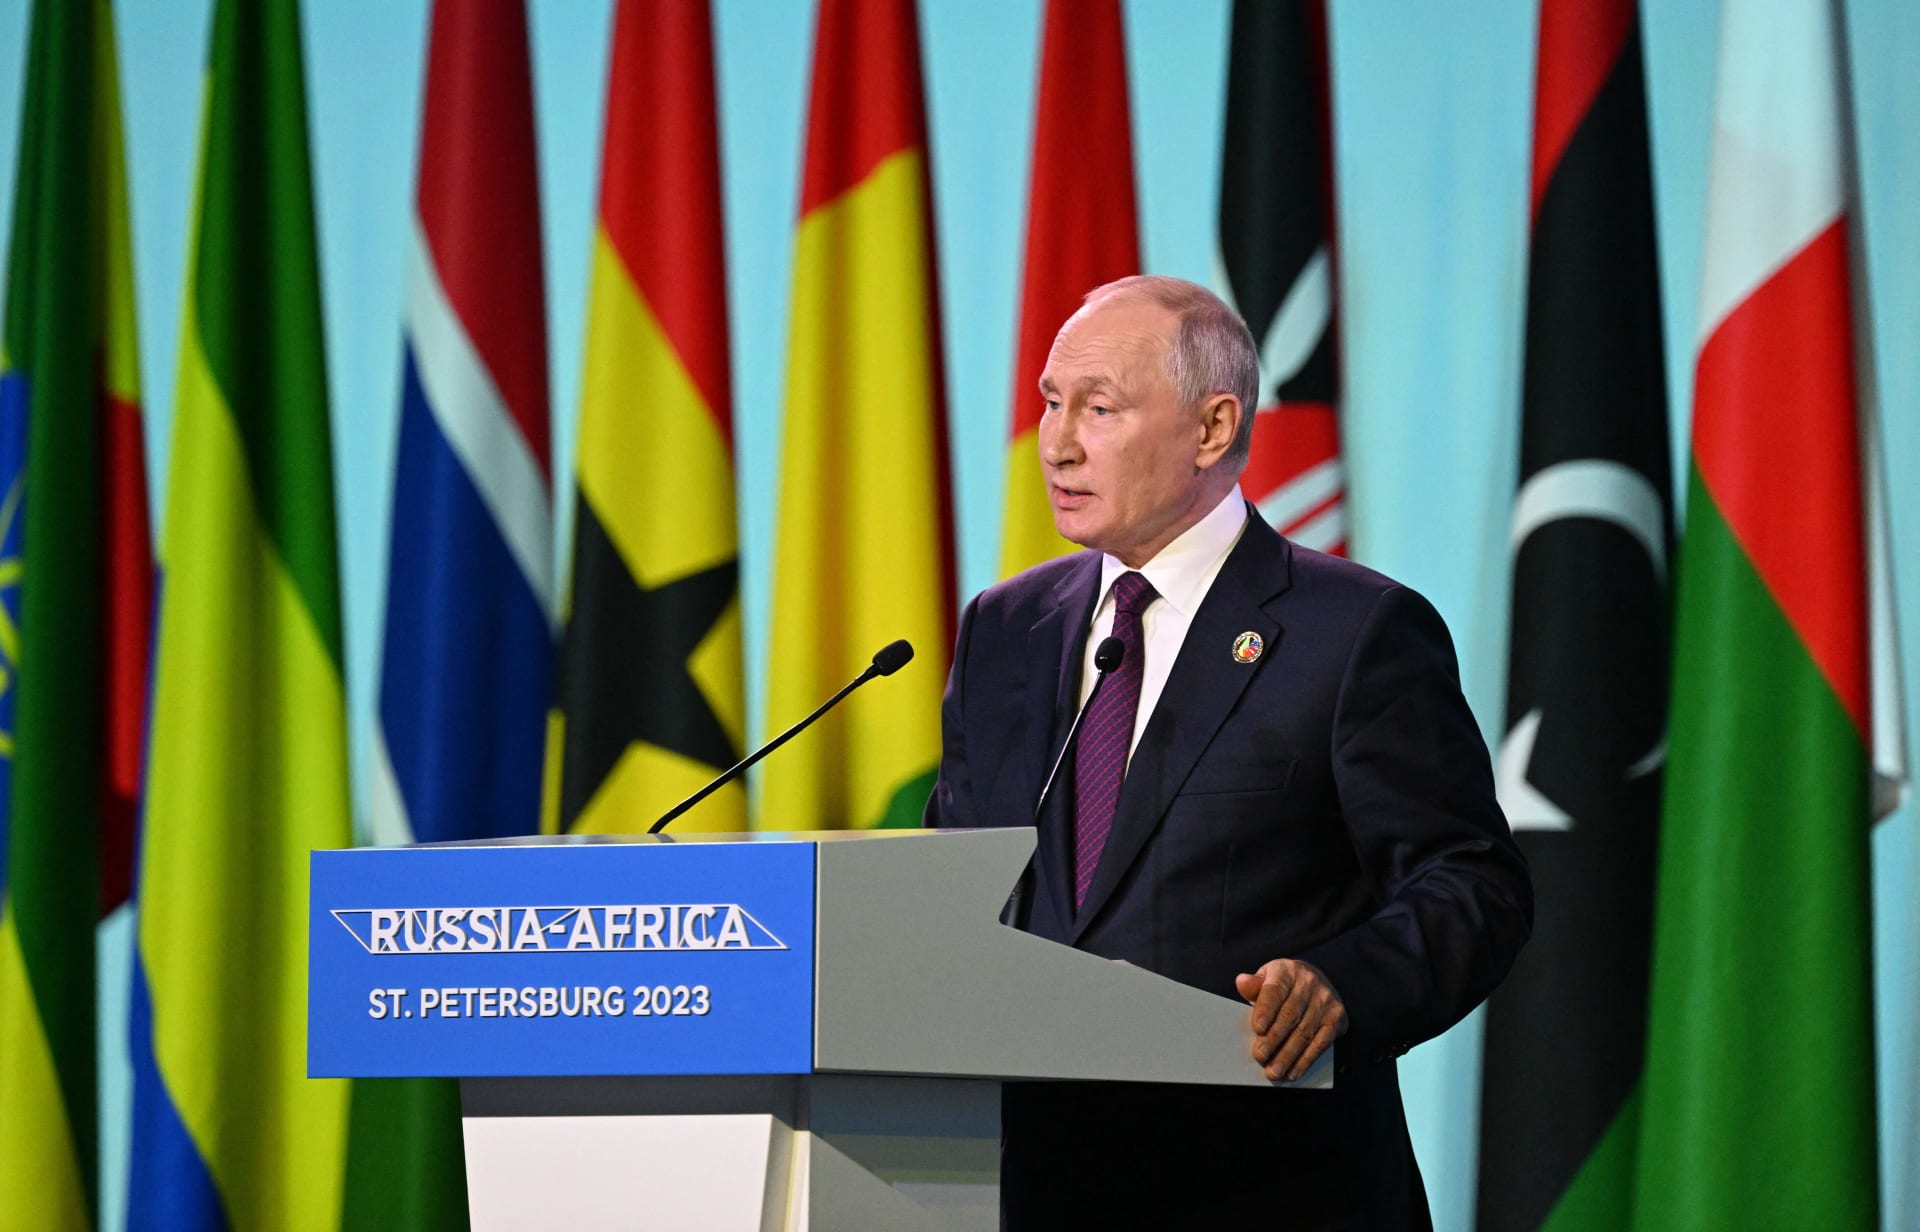 الاتحاد الأوروبي: اجتماع بوتين مع زعماء إفريقيا كان فشلا دبلوماسيا كاملا